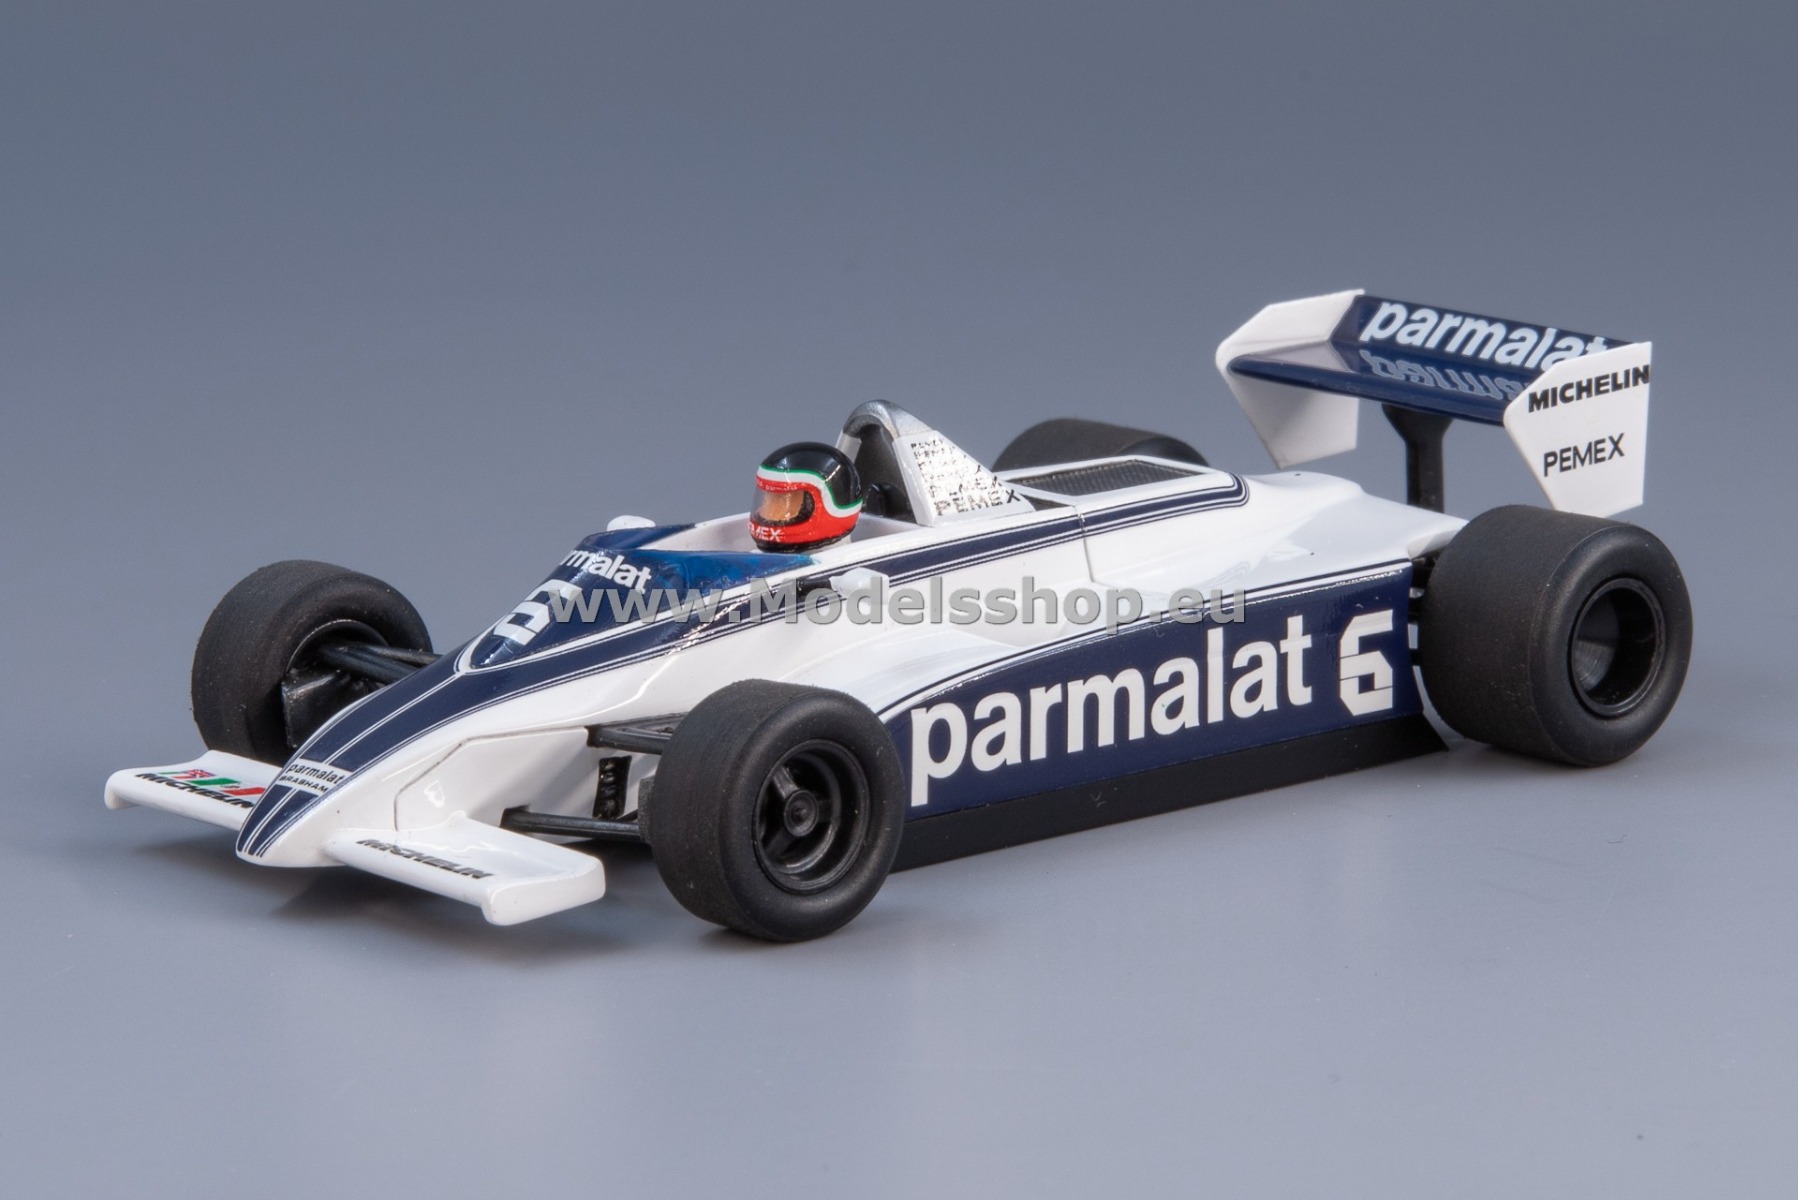 Spark S4348 Brabham BT49/C no. 6, Formula 1, Monaco GP 1981, Hector Rebaque